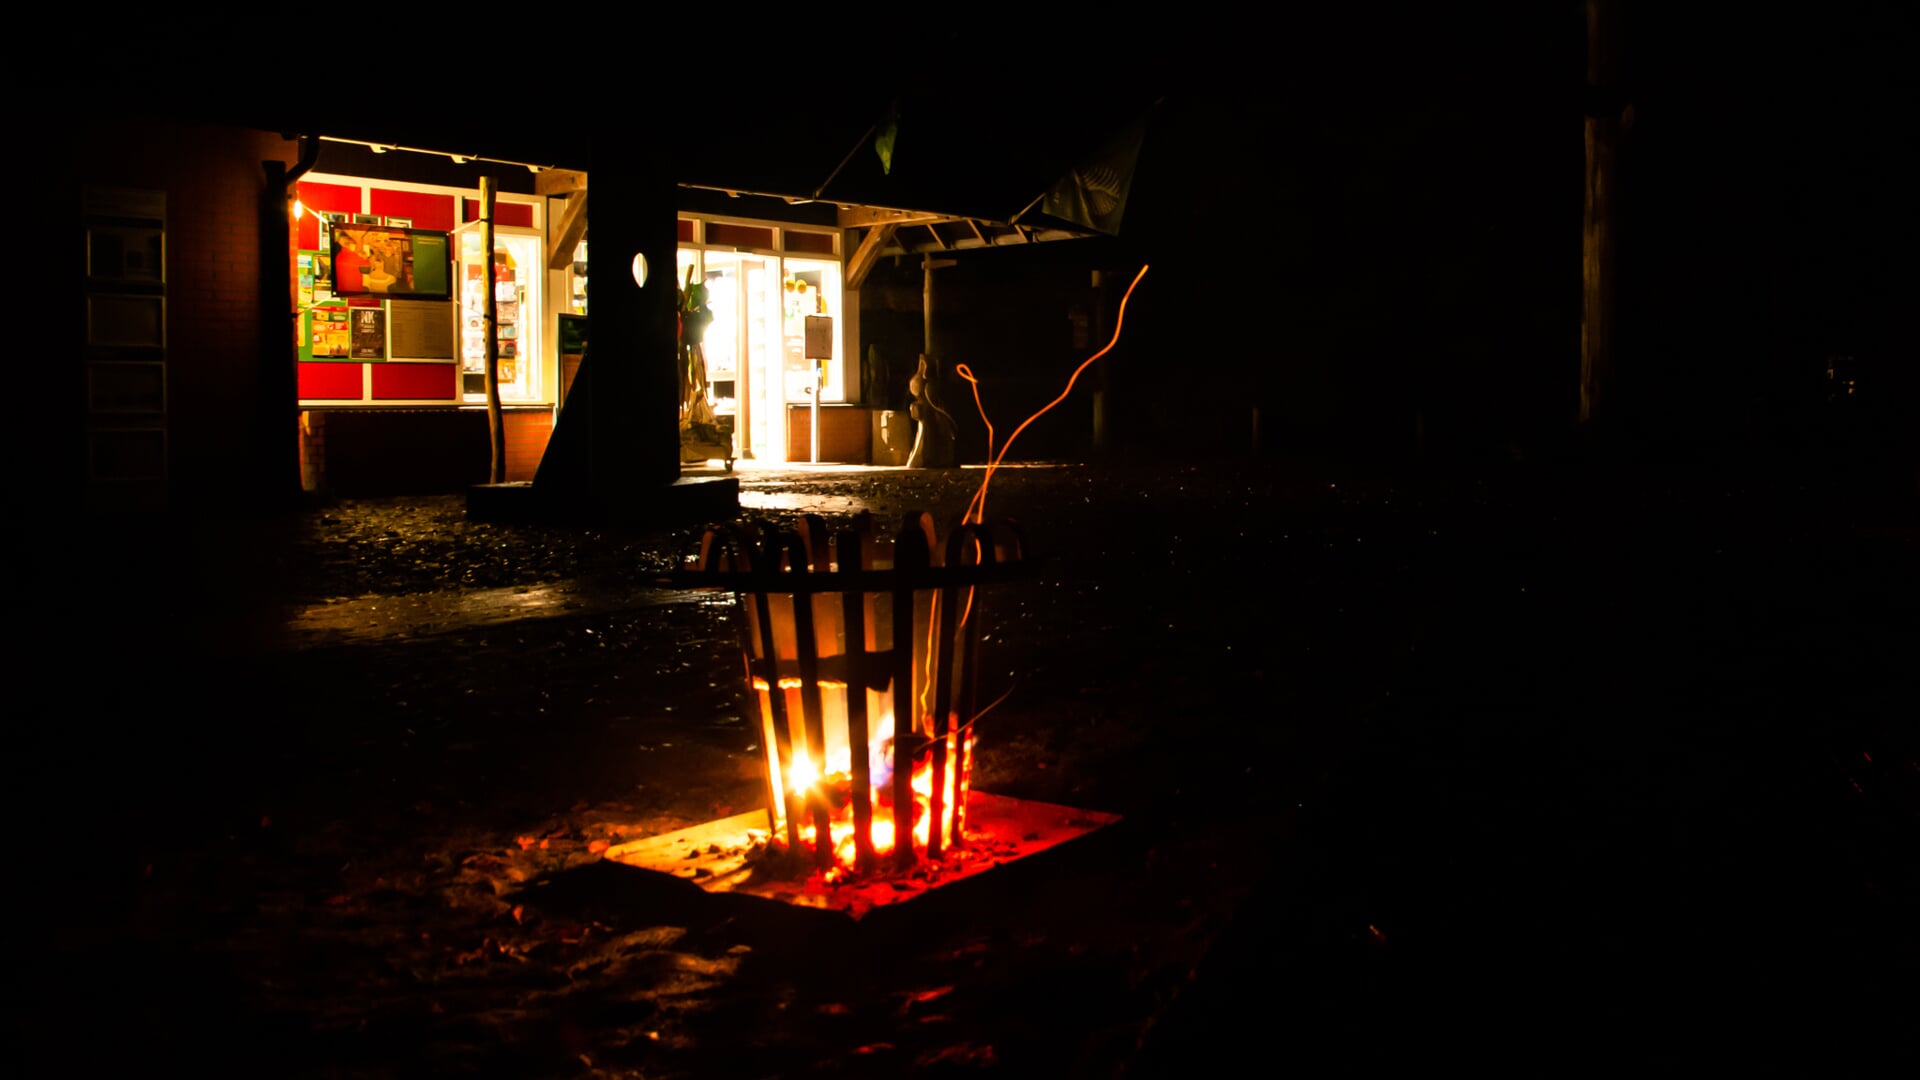 Na de lichtjeswandeling kunnen de wandelaars zich warmen bij de vuurkorven. (foto: Irene Lantman)